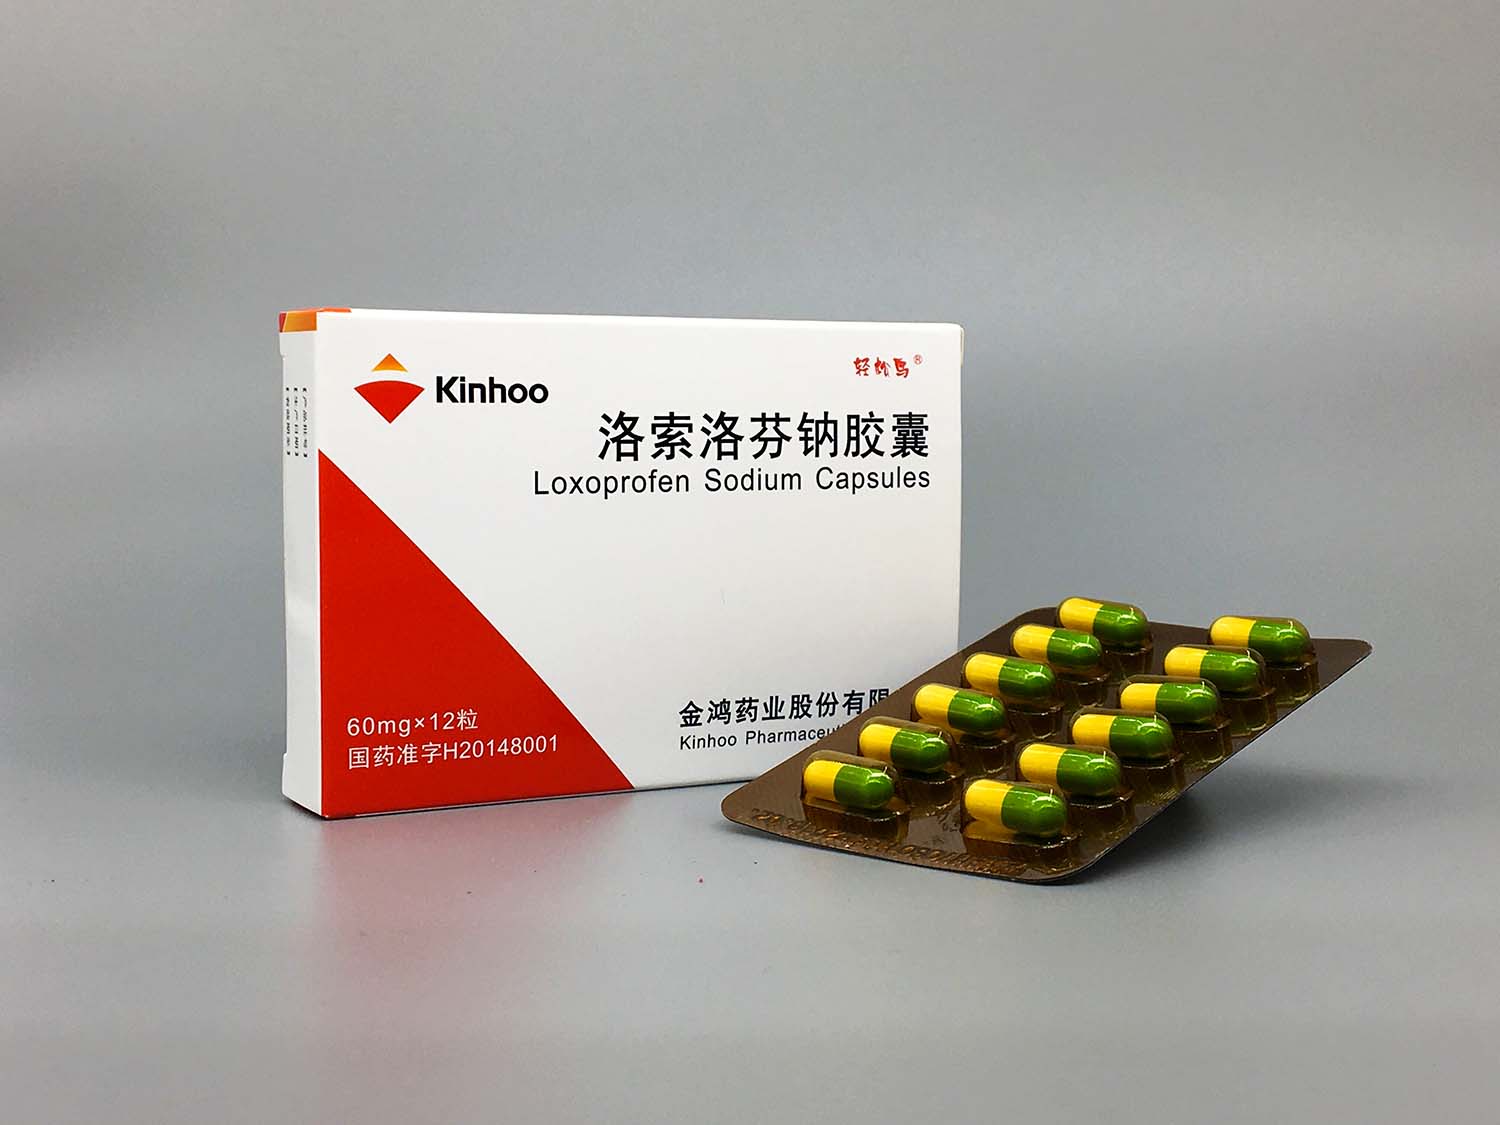 Loxoprofen Sodium Capsules